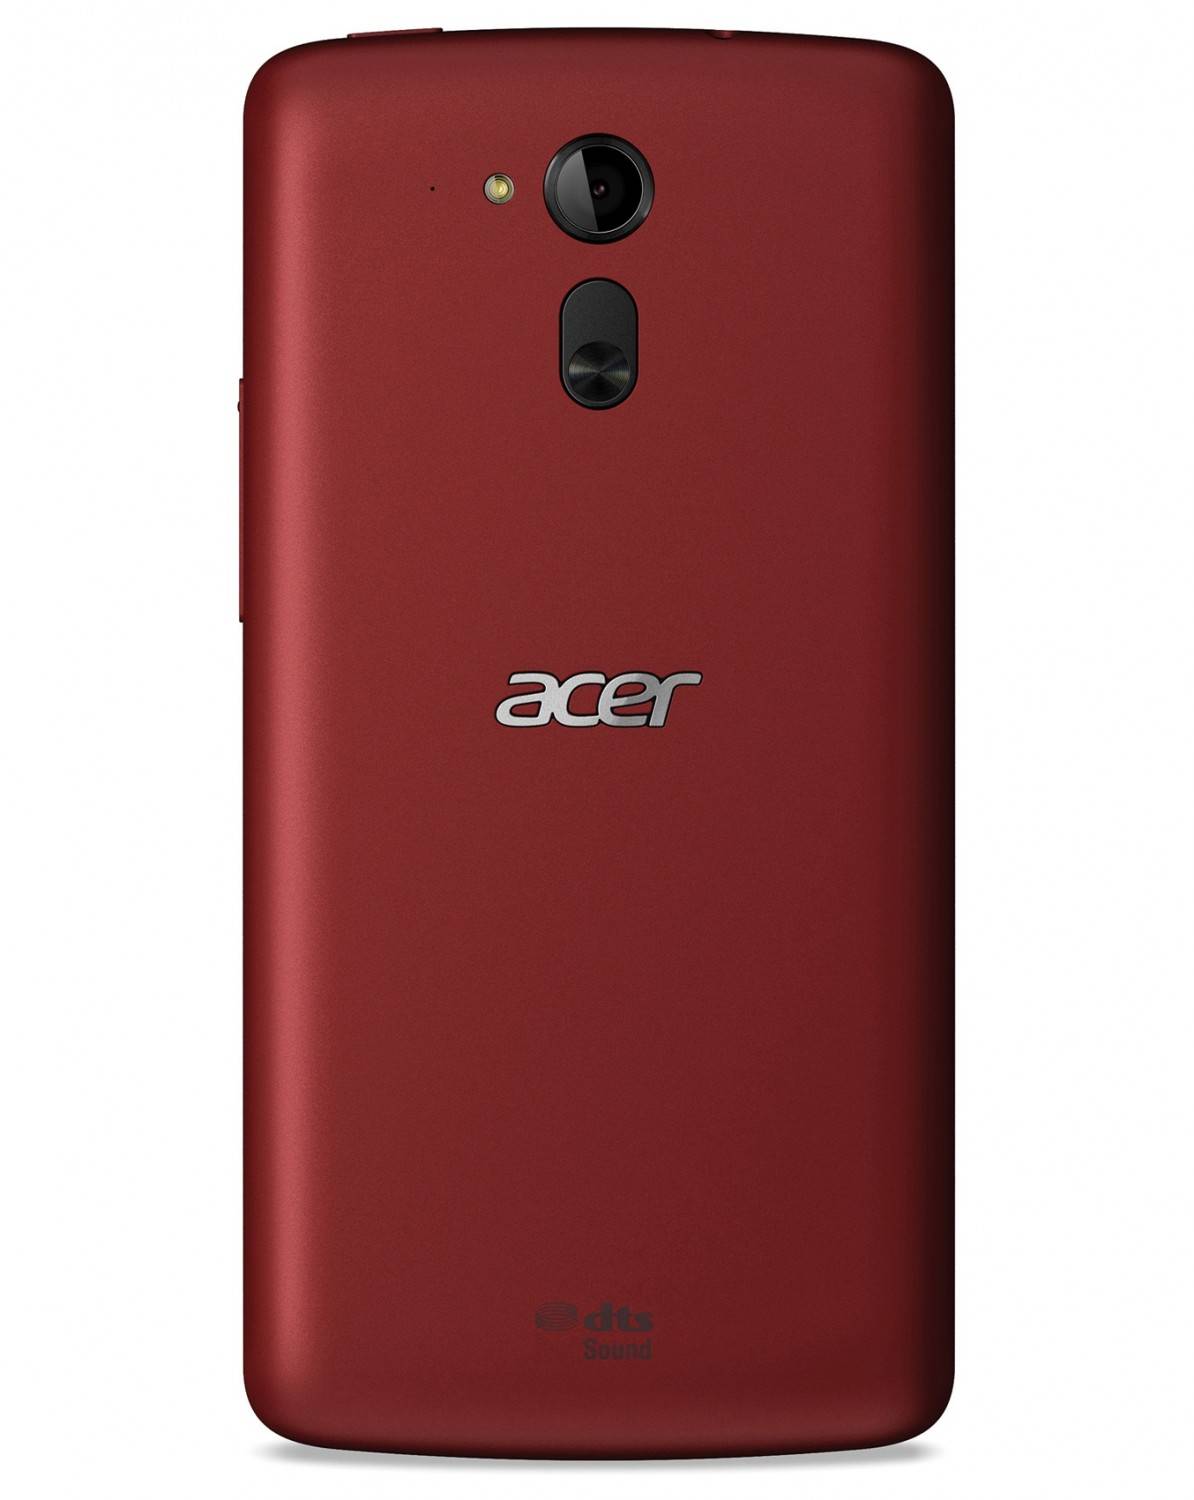 Acer e700 test - Die besten Acer e700 test auf einen Blick!